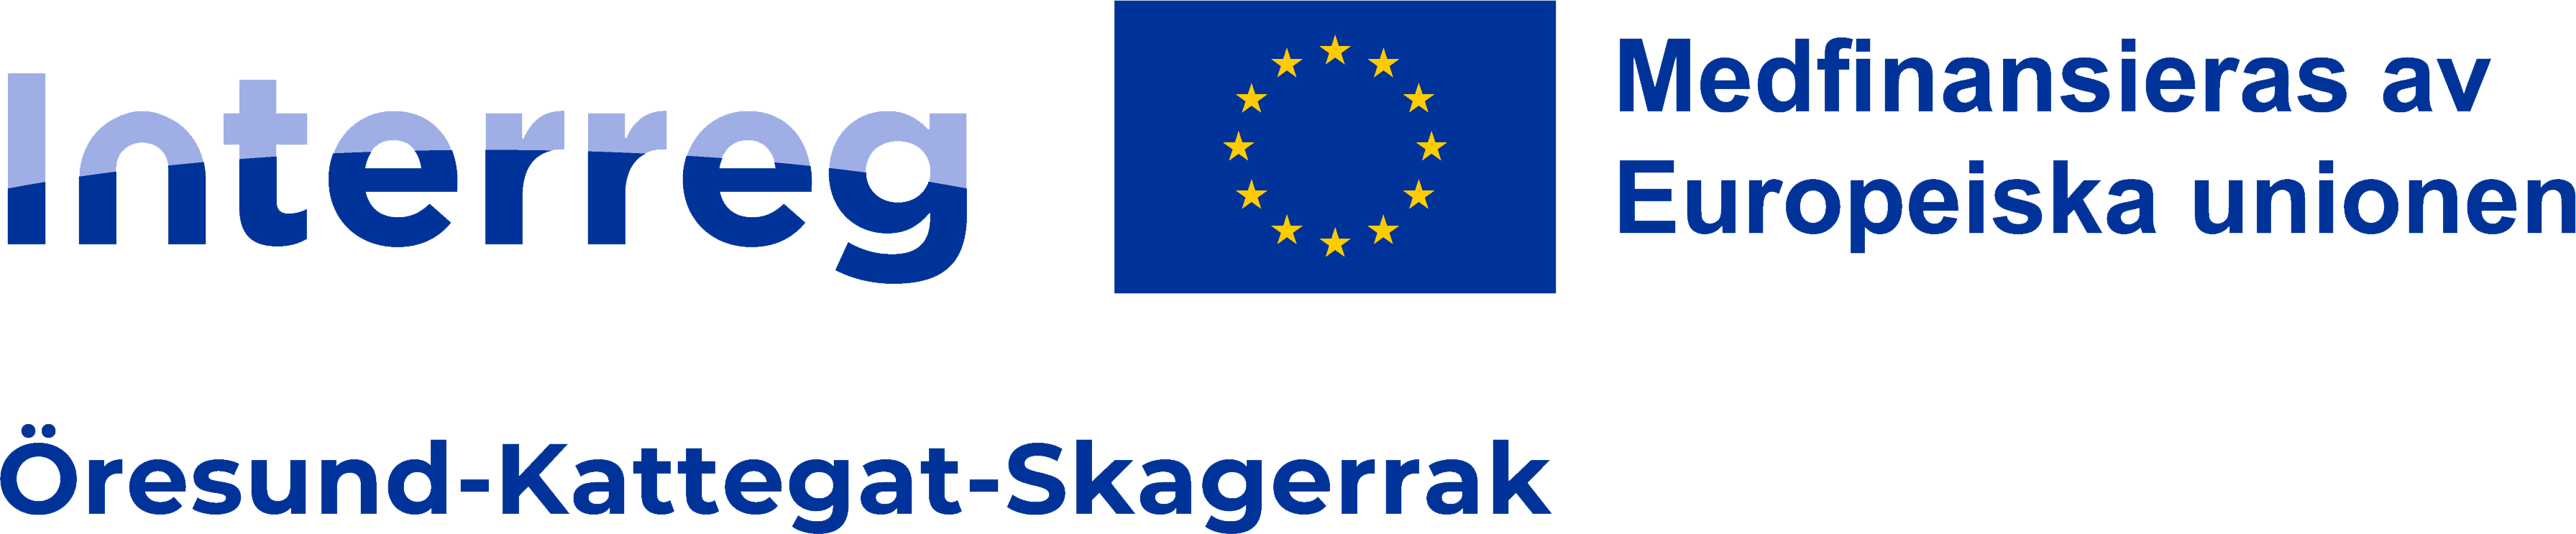 Interreg Öresund-Kattegatt-Skagerrak, medfinansieras av Europeiska unionen, logotyp.